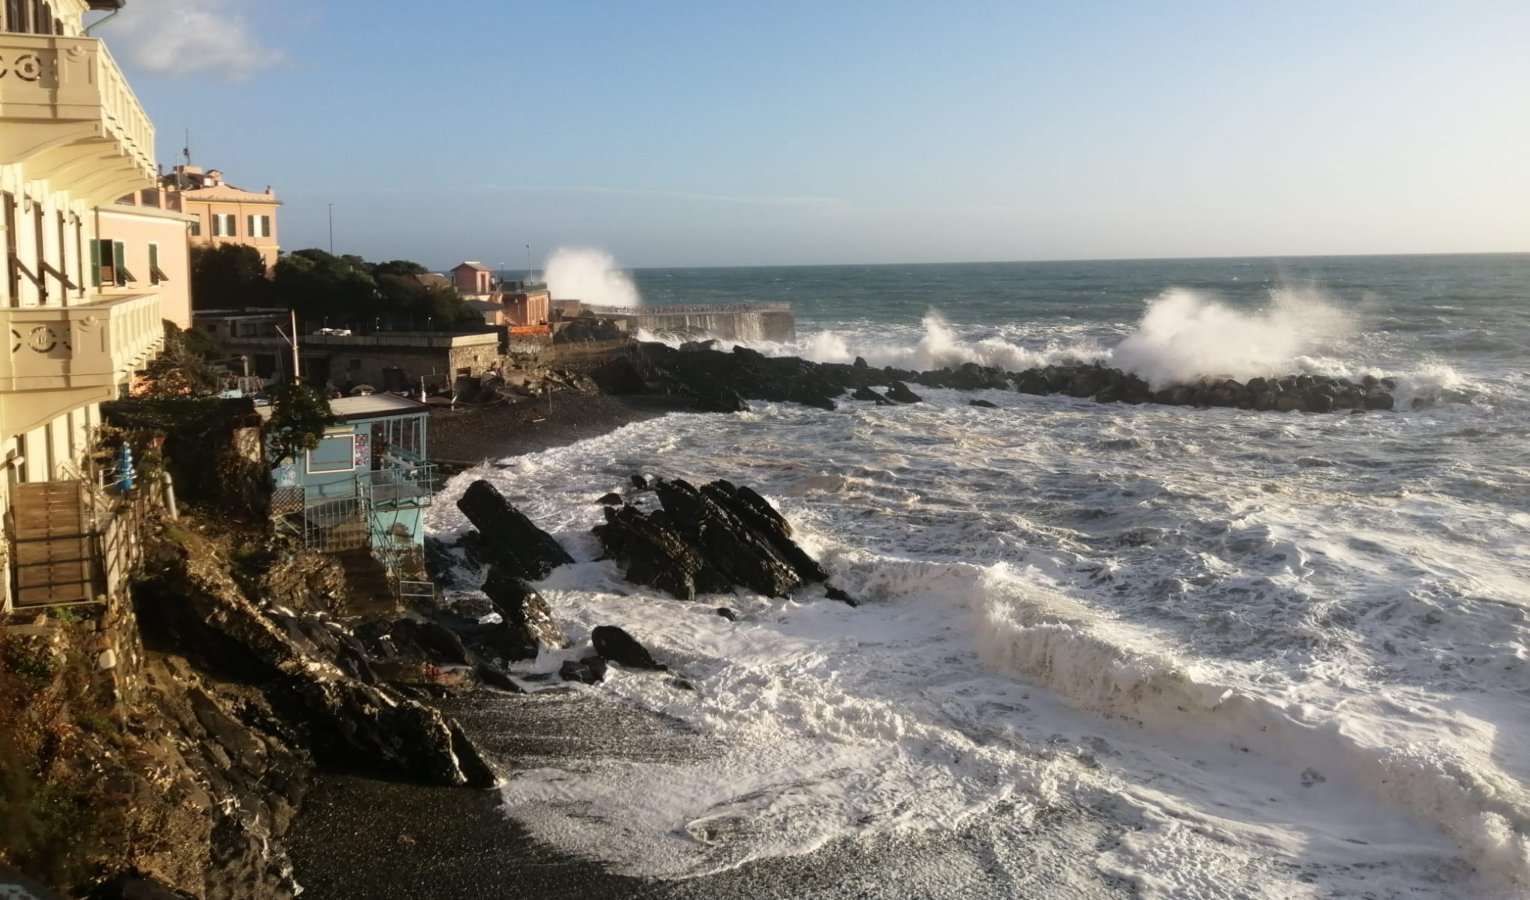 Le onde si infrangono su spiagge e scogli: mareggiata sulle coste della Liguria 